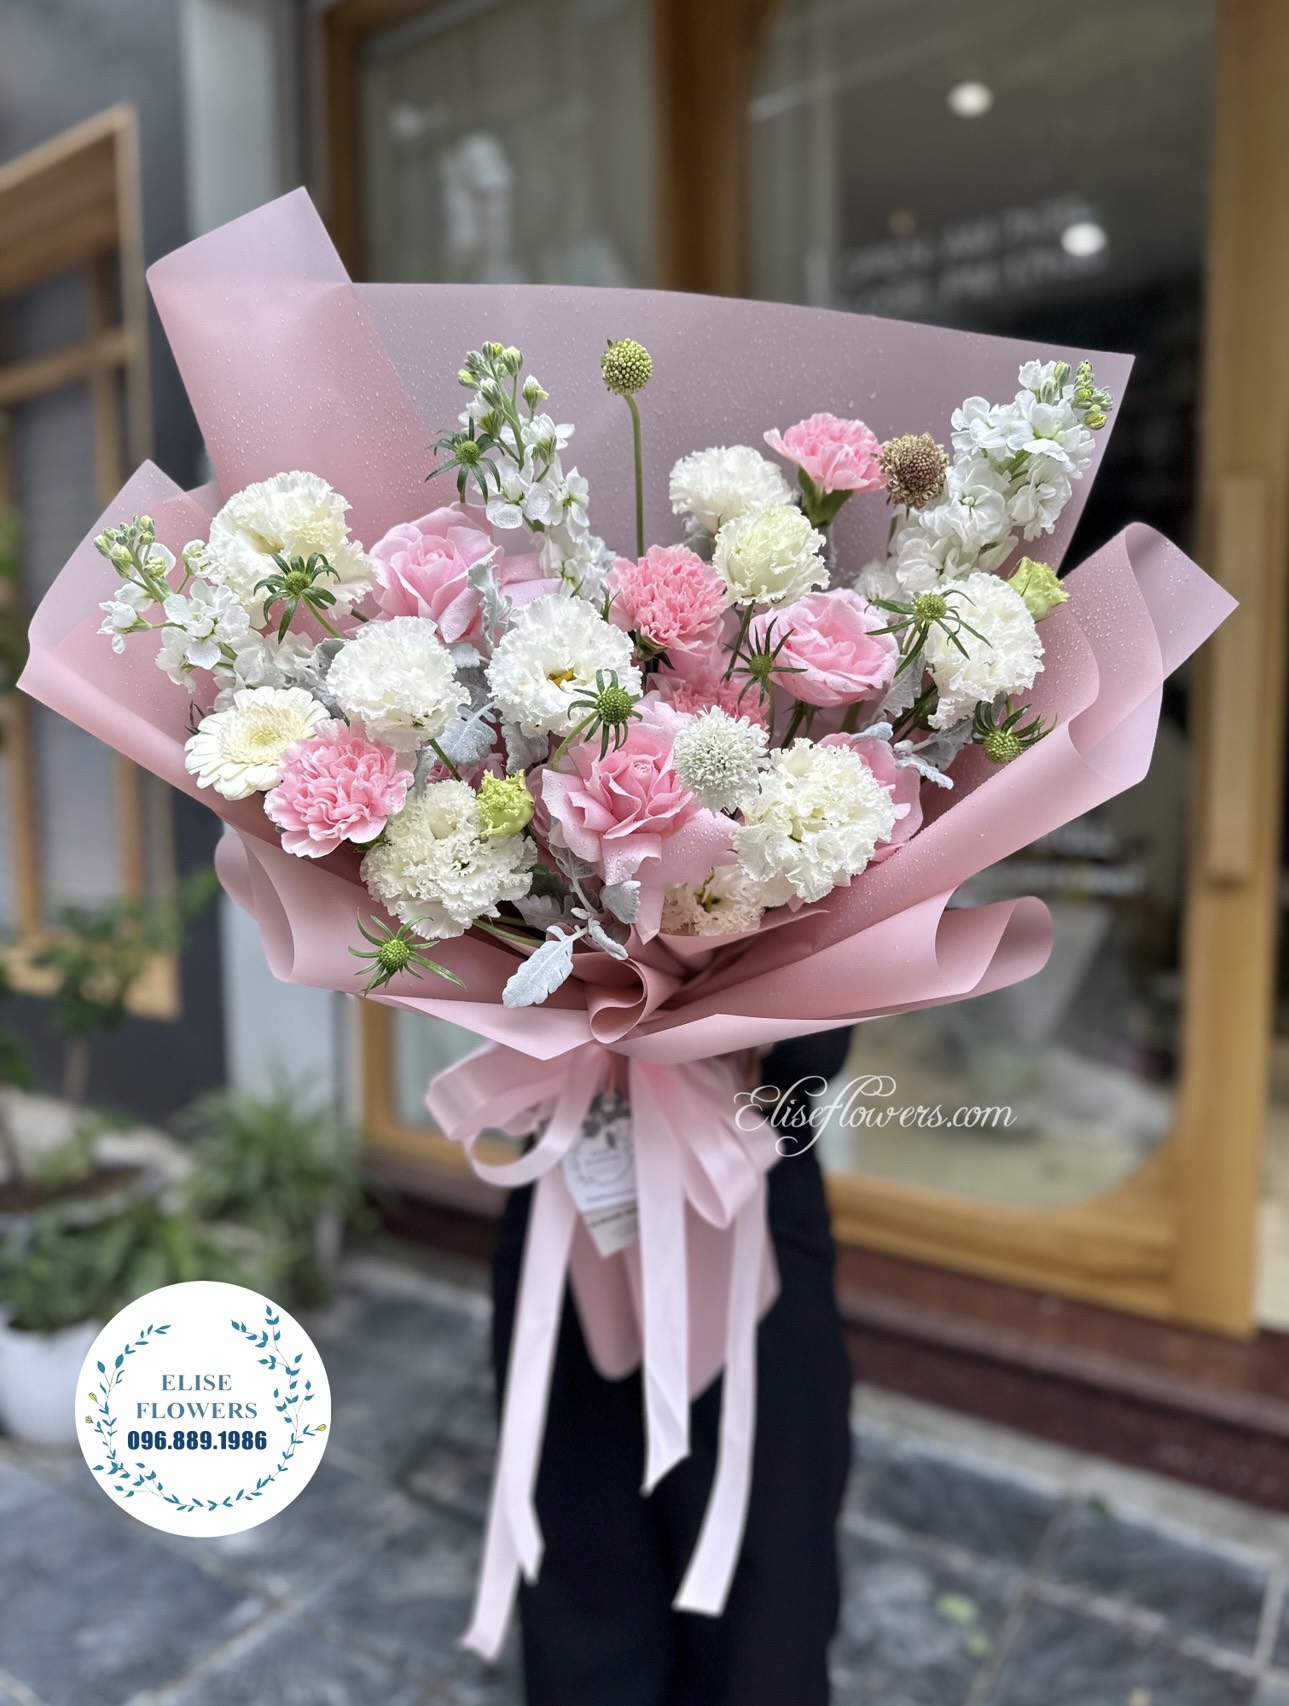 Bó hoa sinh nhật màu hồng ở quận Hoàn Kiếm - Hà Nội. Hoa sinh nhật bạn gái ở quận Hoàn Kiếm